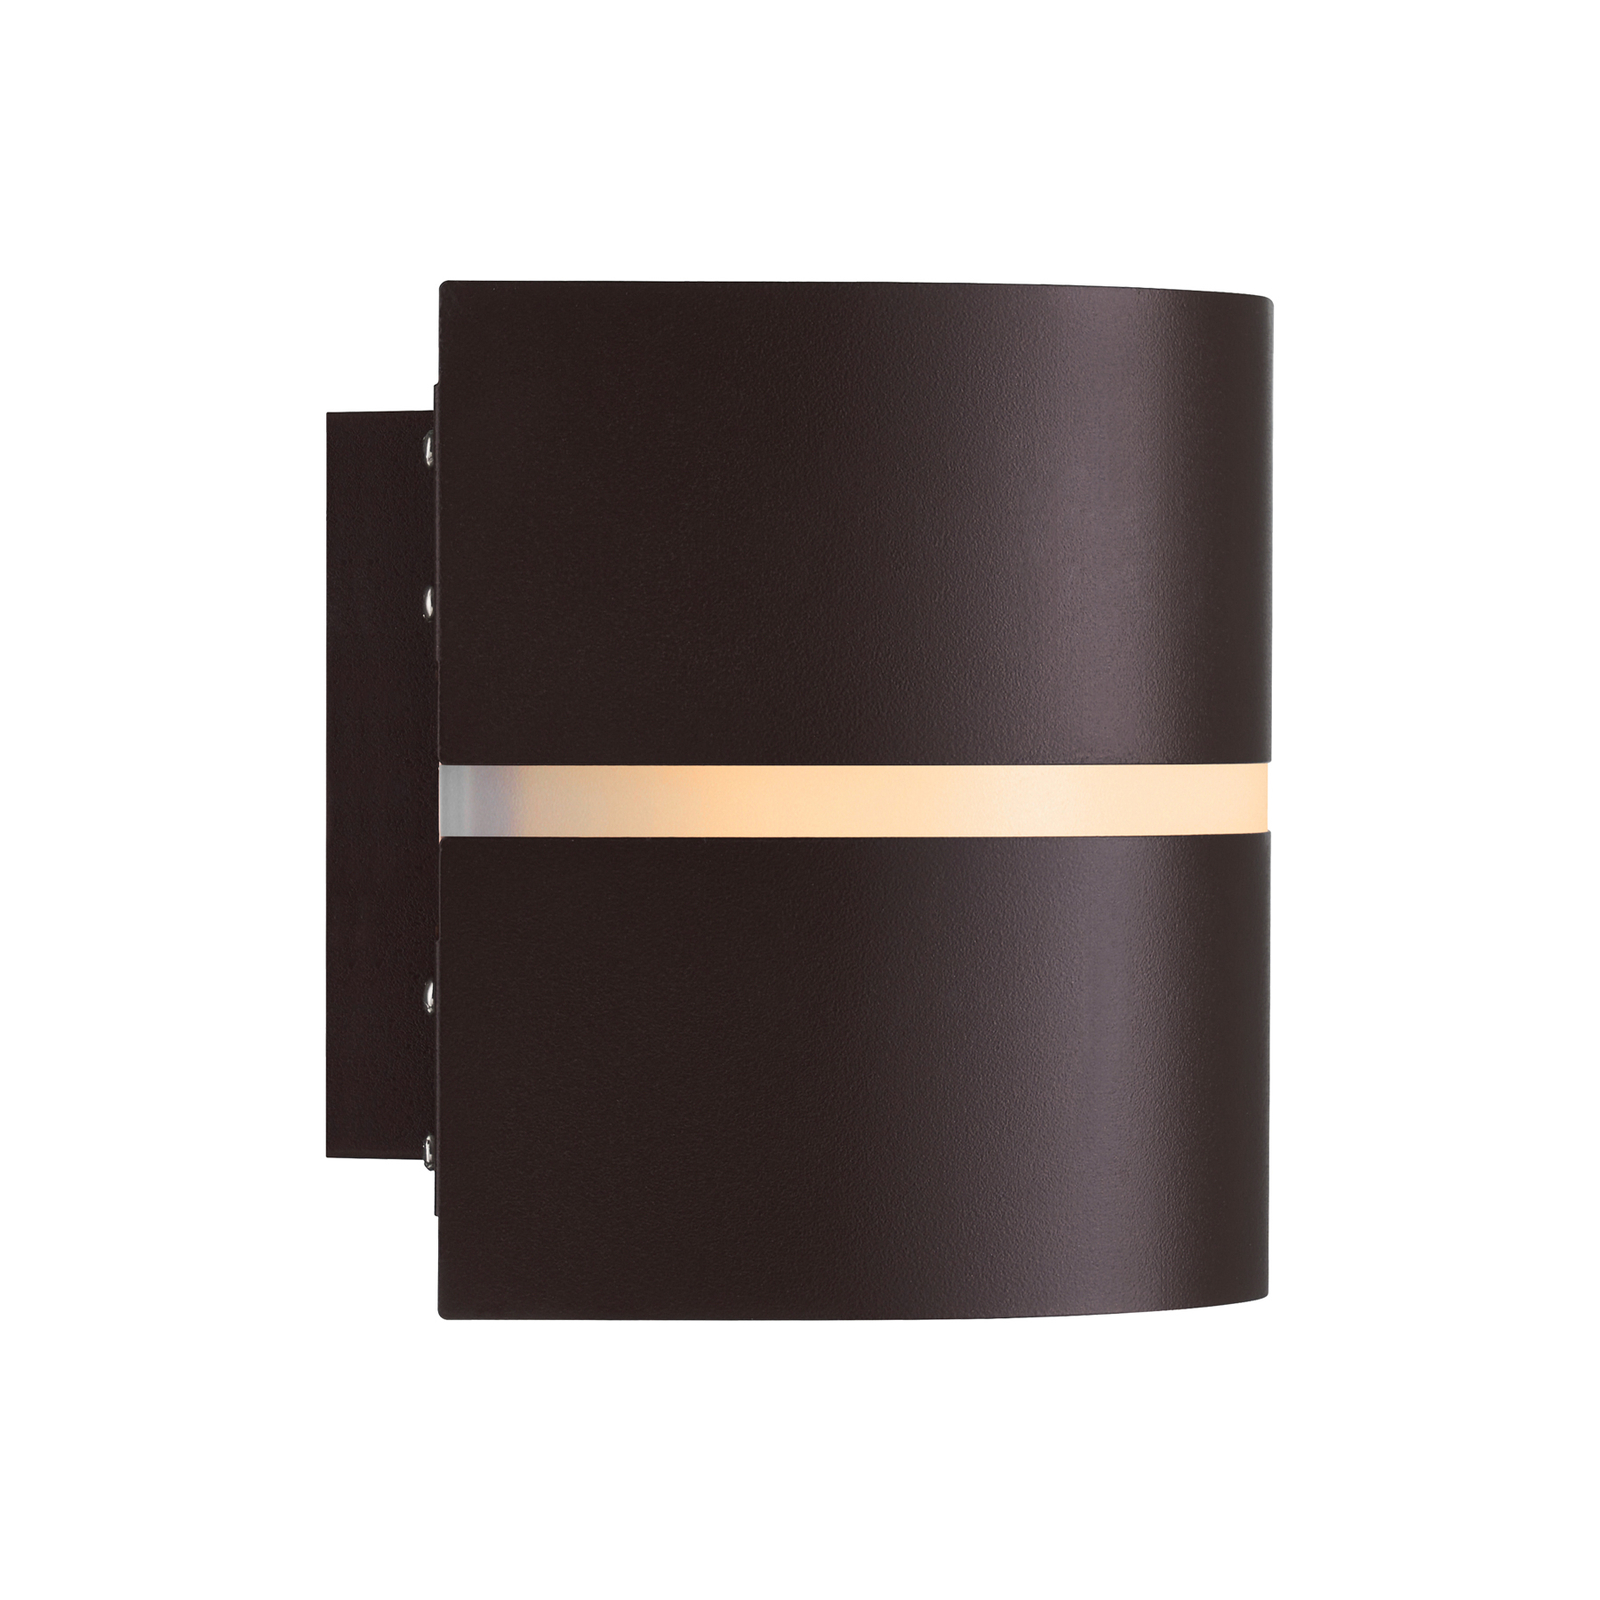 Zunanja stenska svetilka Sibelis, E27, plastika, rjava kovinska barva